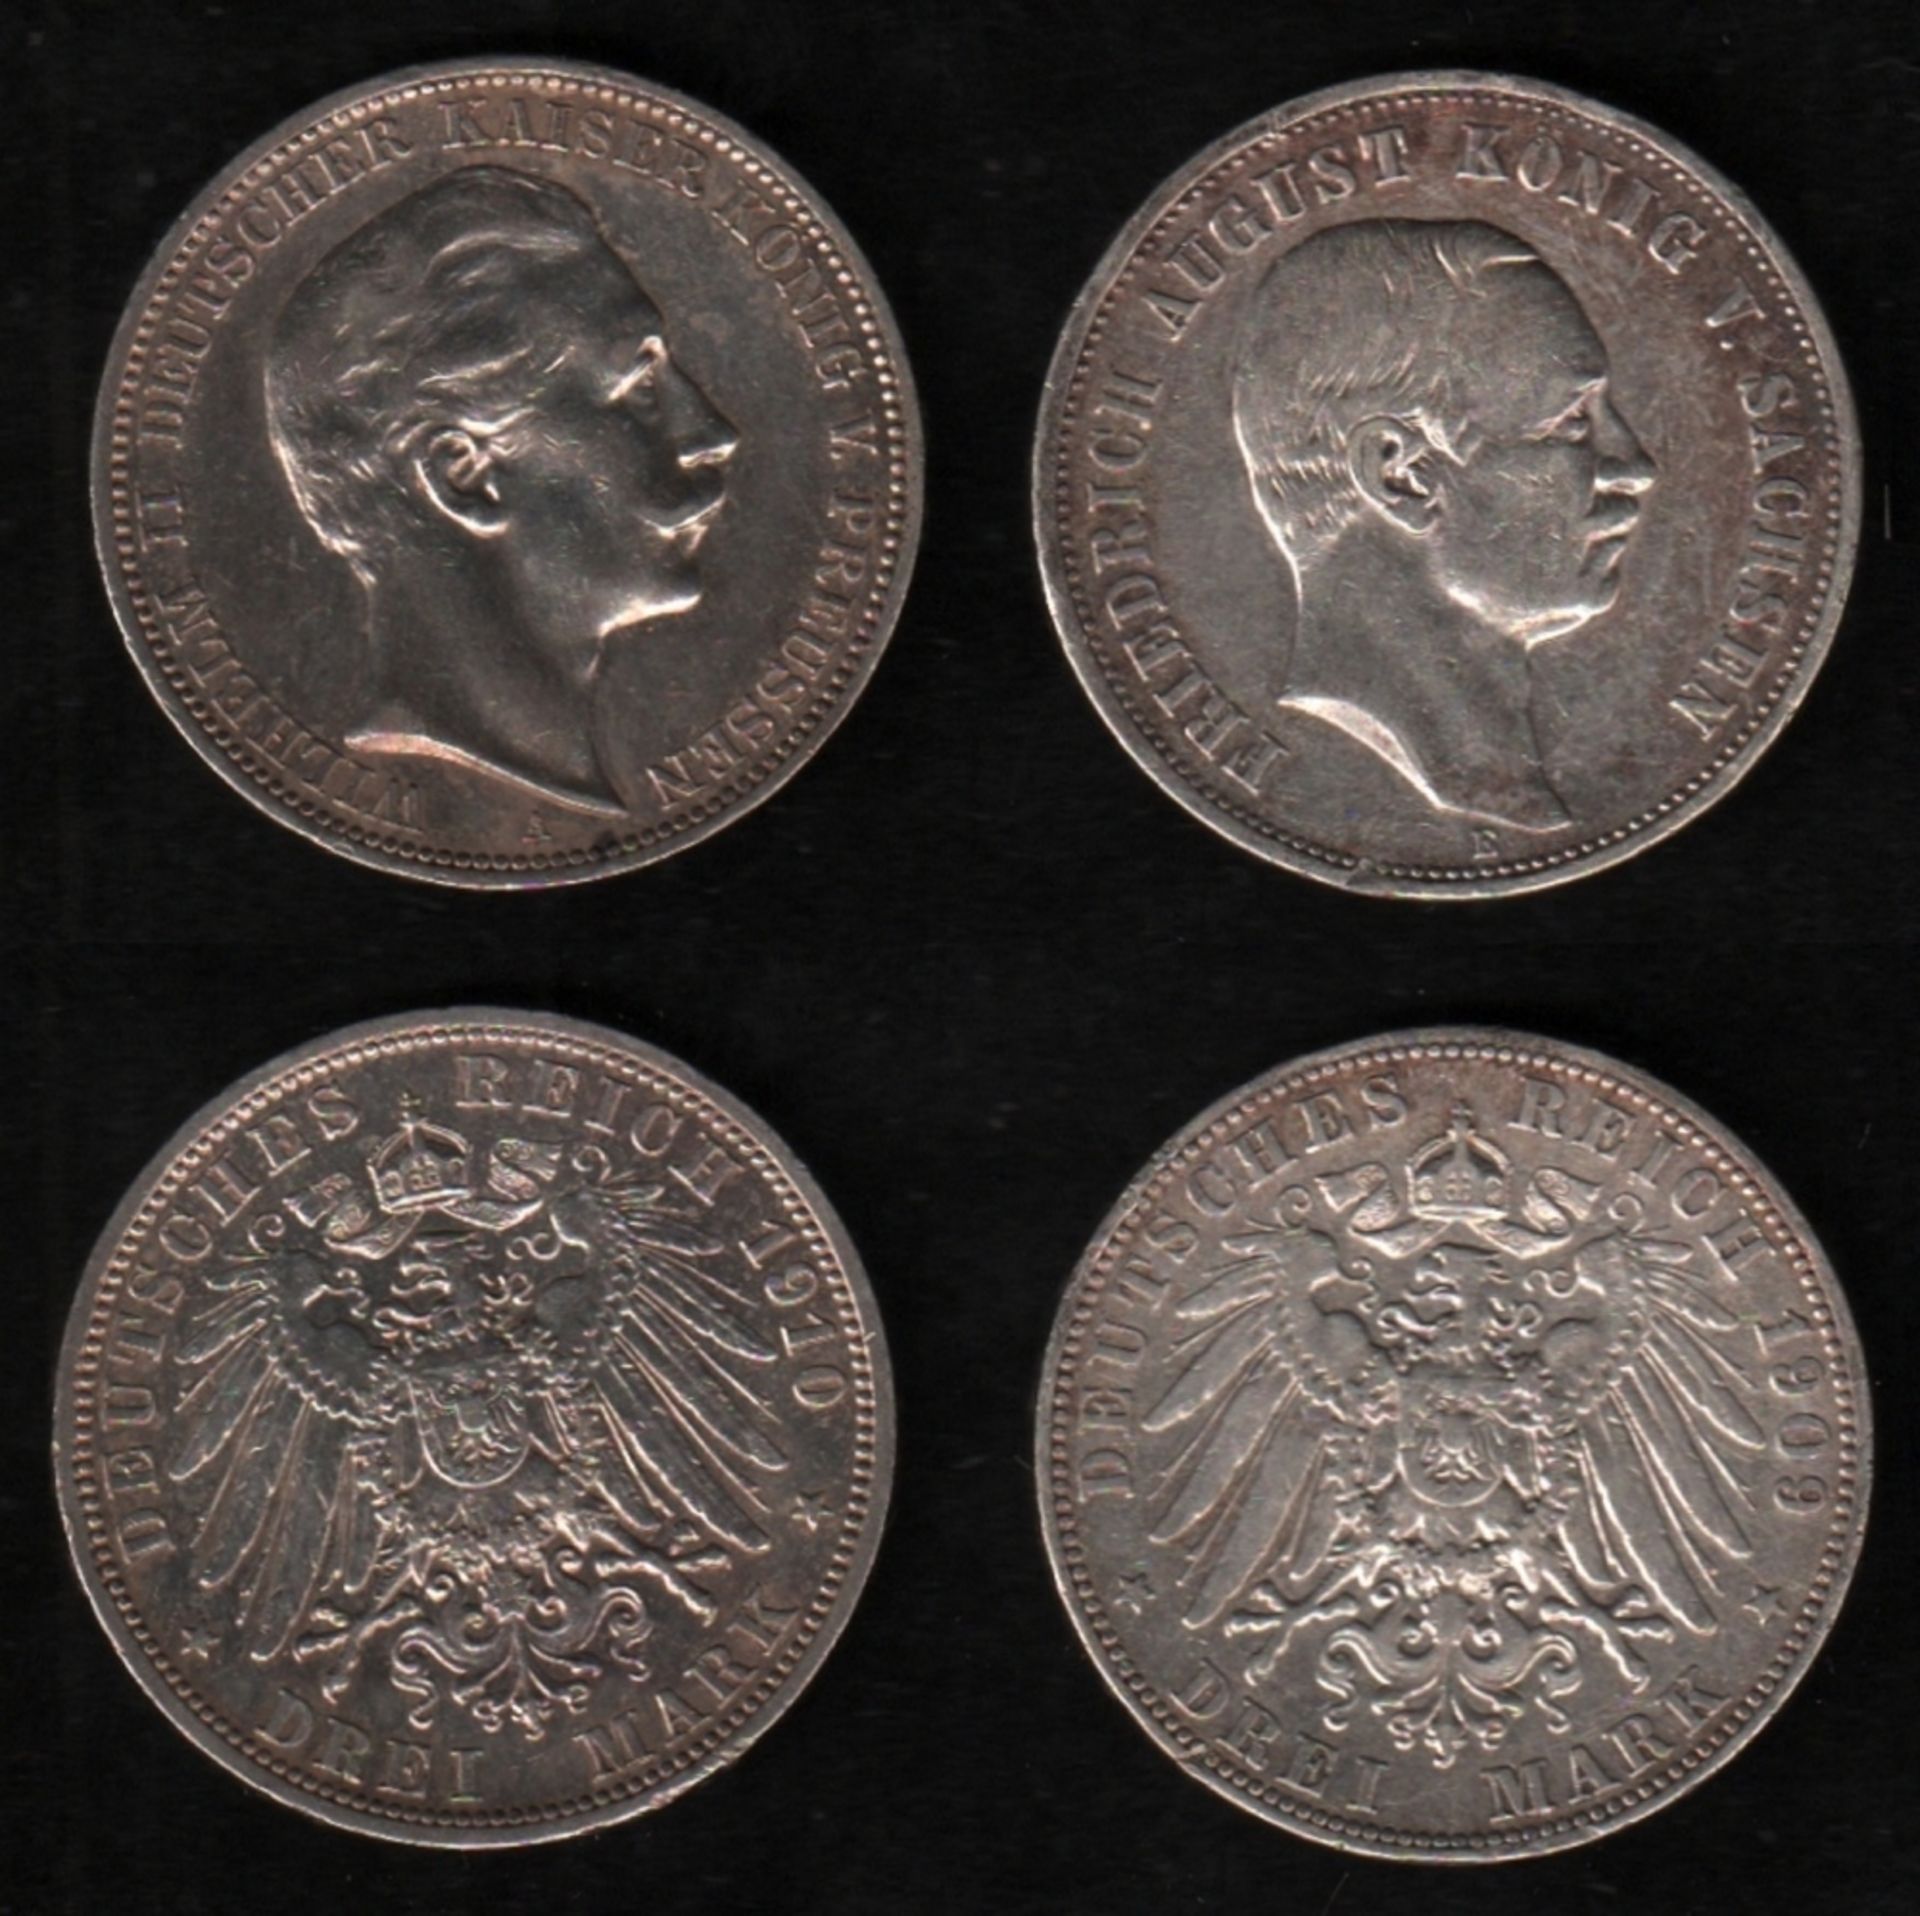 Deutsches Reich. Silbermünze. 3 Mark. Friedrich August III., König von Sachsen. E 1909. Vorderseite: